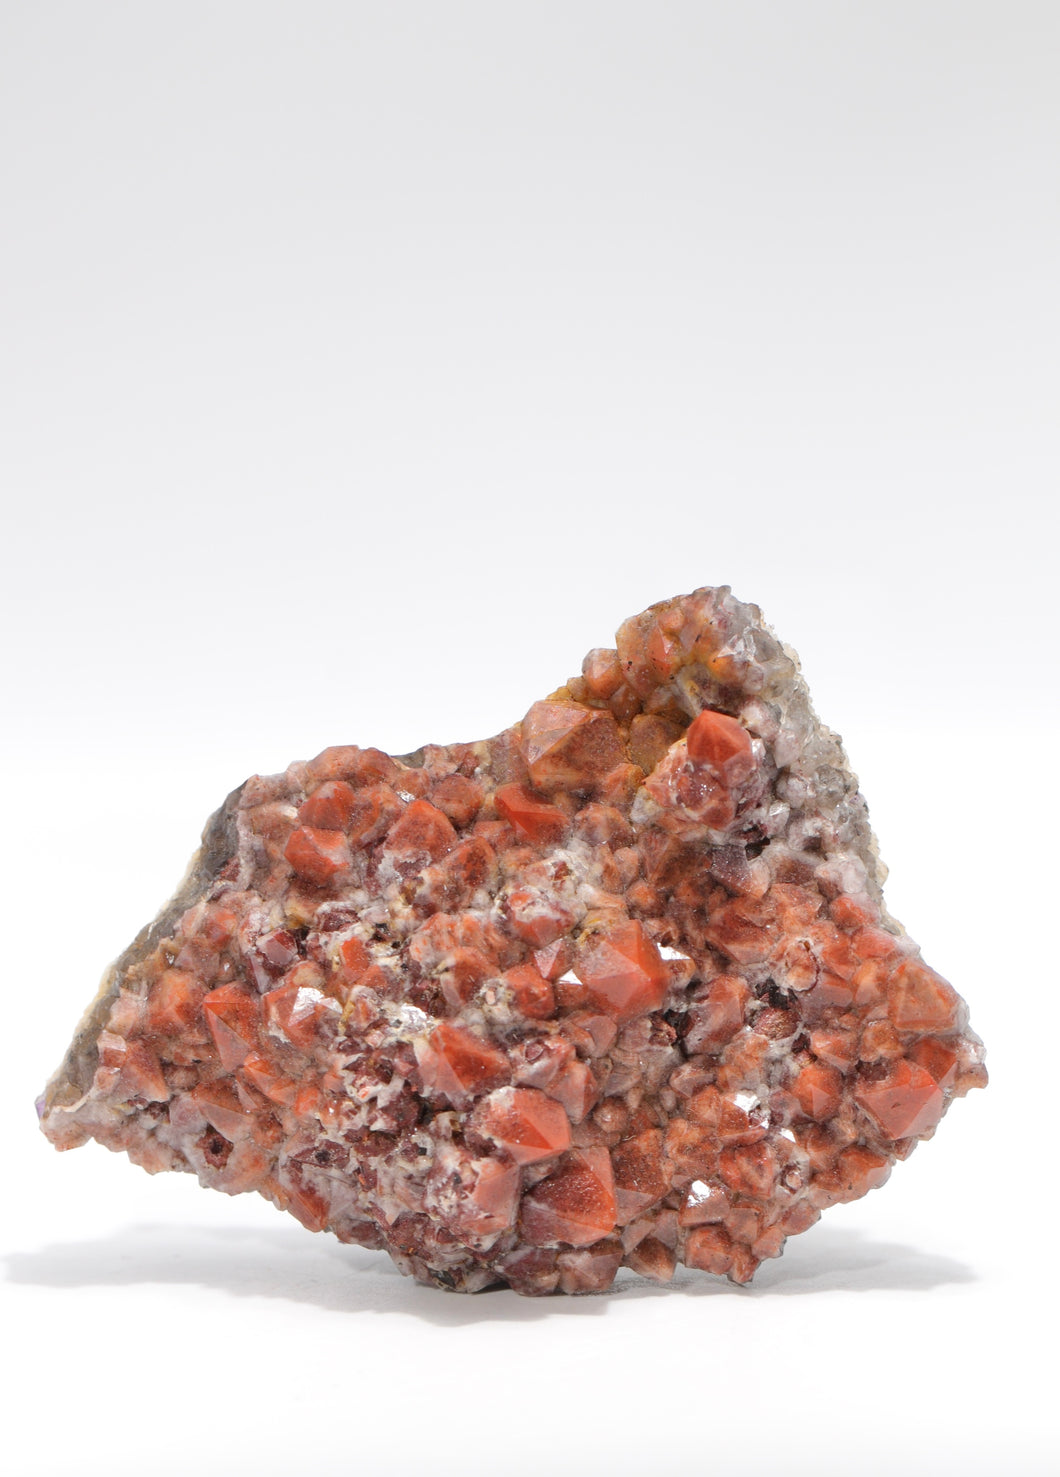 Quartz with Hematite on Fluorite - Wolsendorf Fluorite Mining District, Schwandorf, Upper Palatinate, Bavaria, Germany